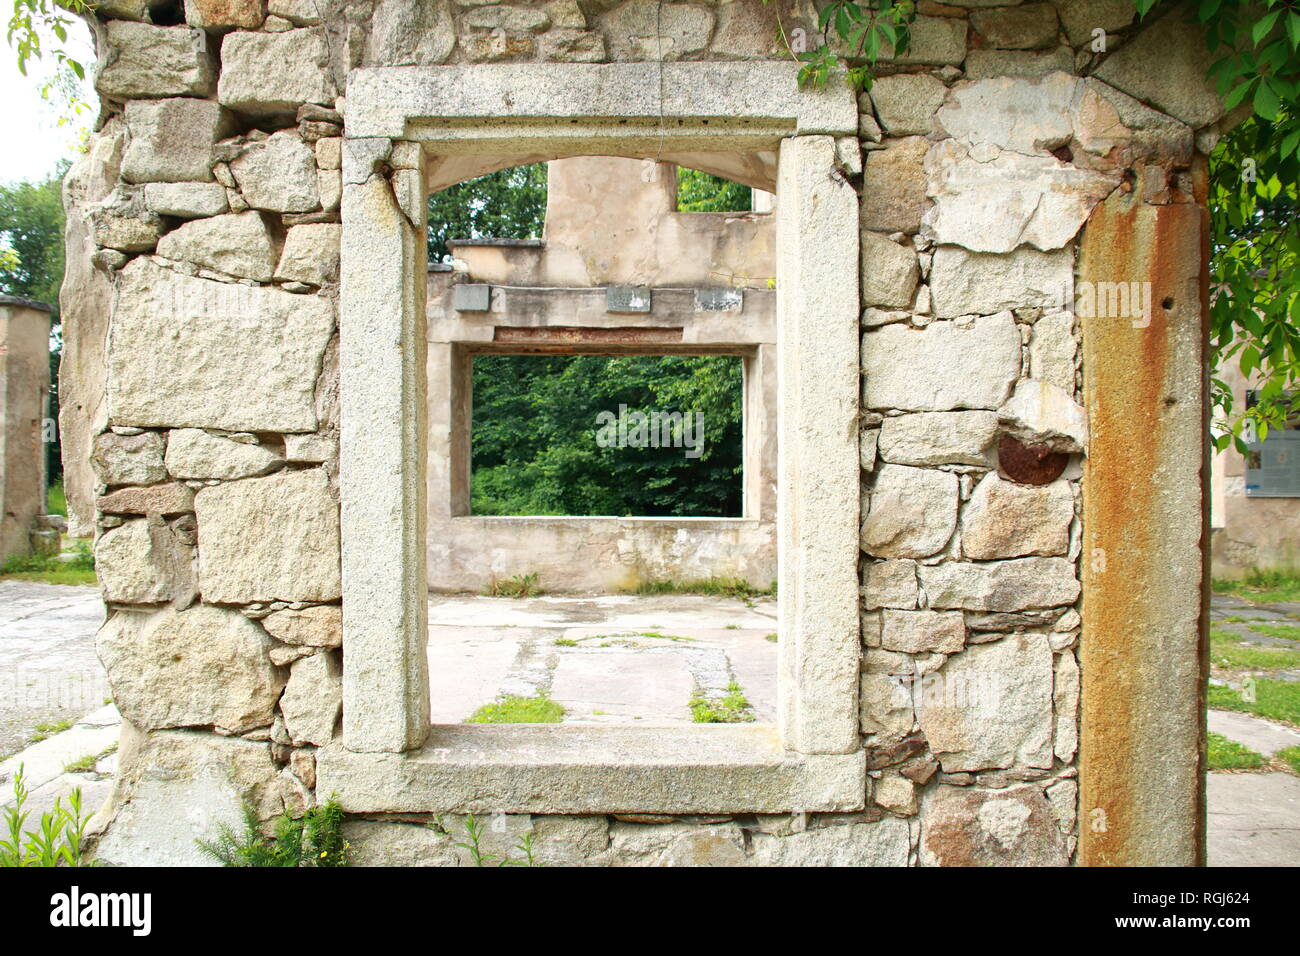 En la ventana de formato apaisado tomadas a través de una ventana en formato vertical. Foto de stock